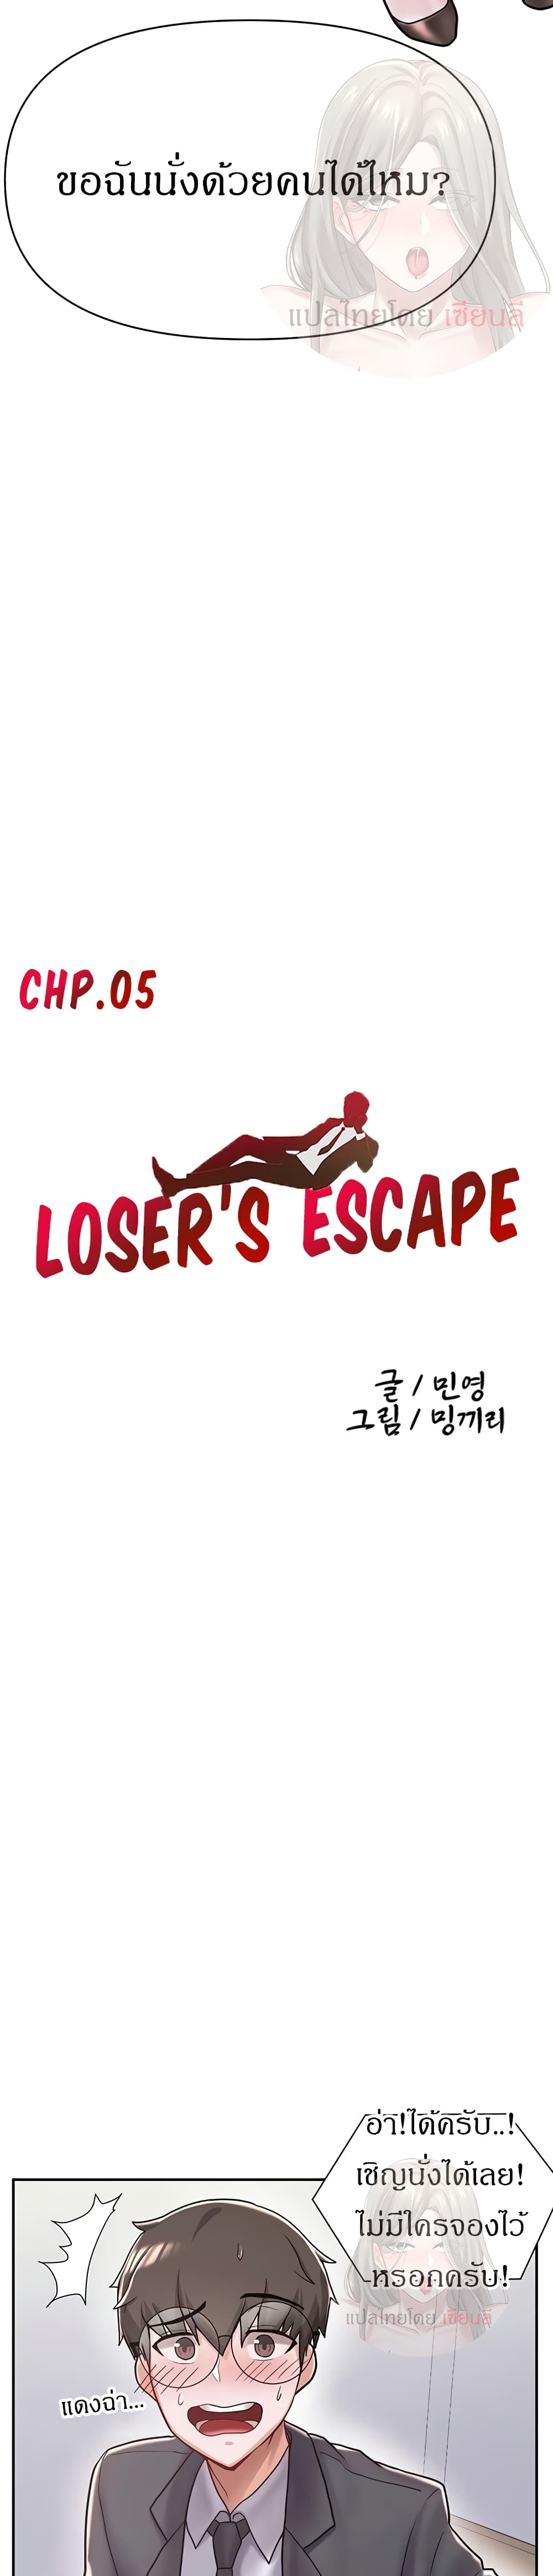 Escape Loser 5 (5)